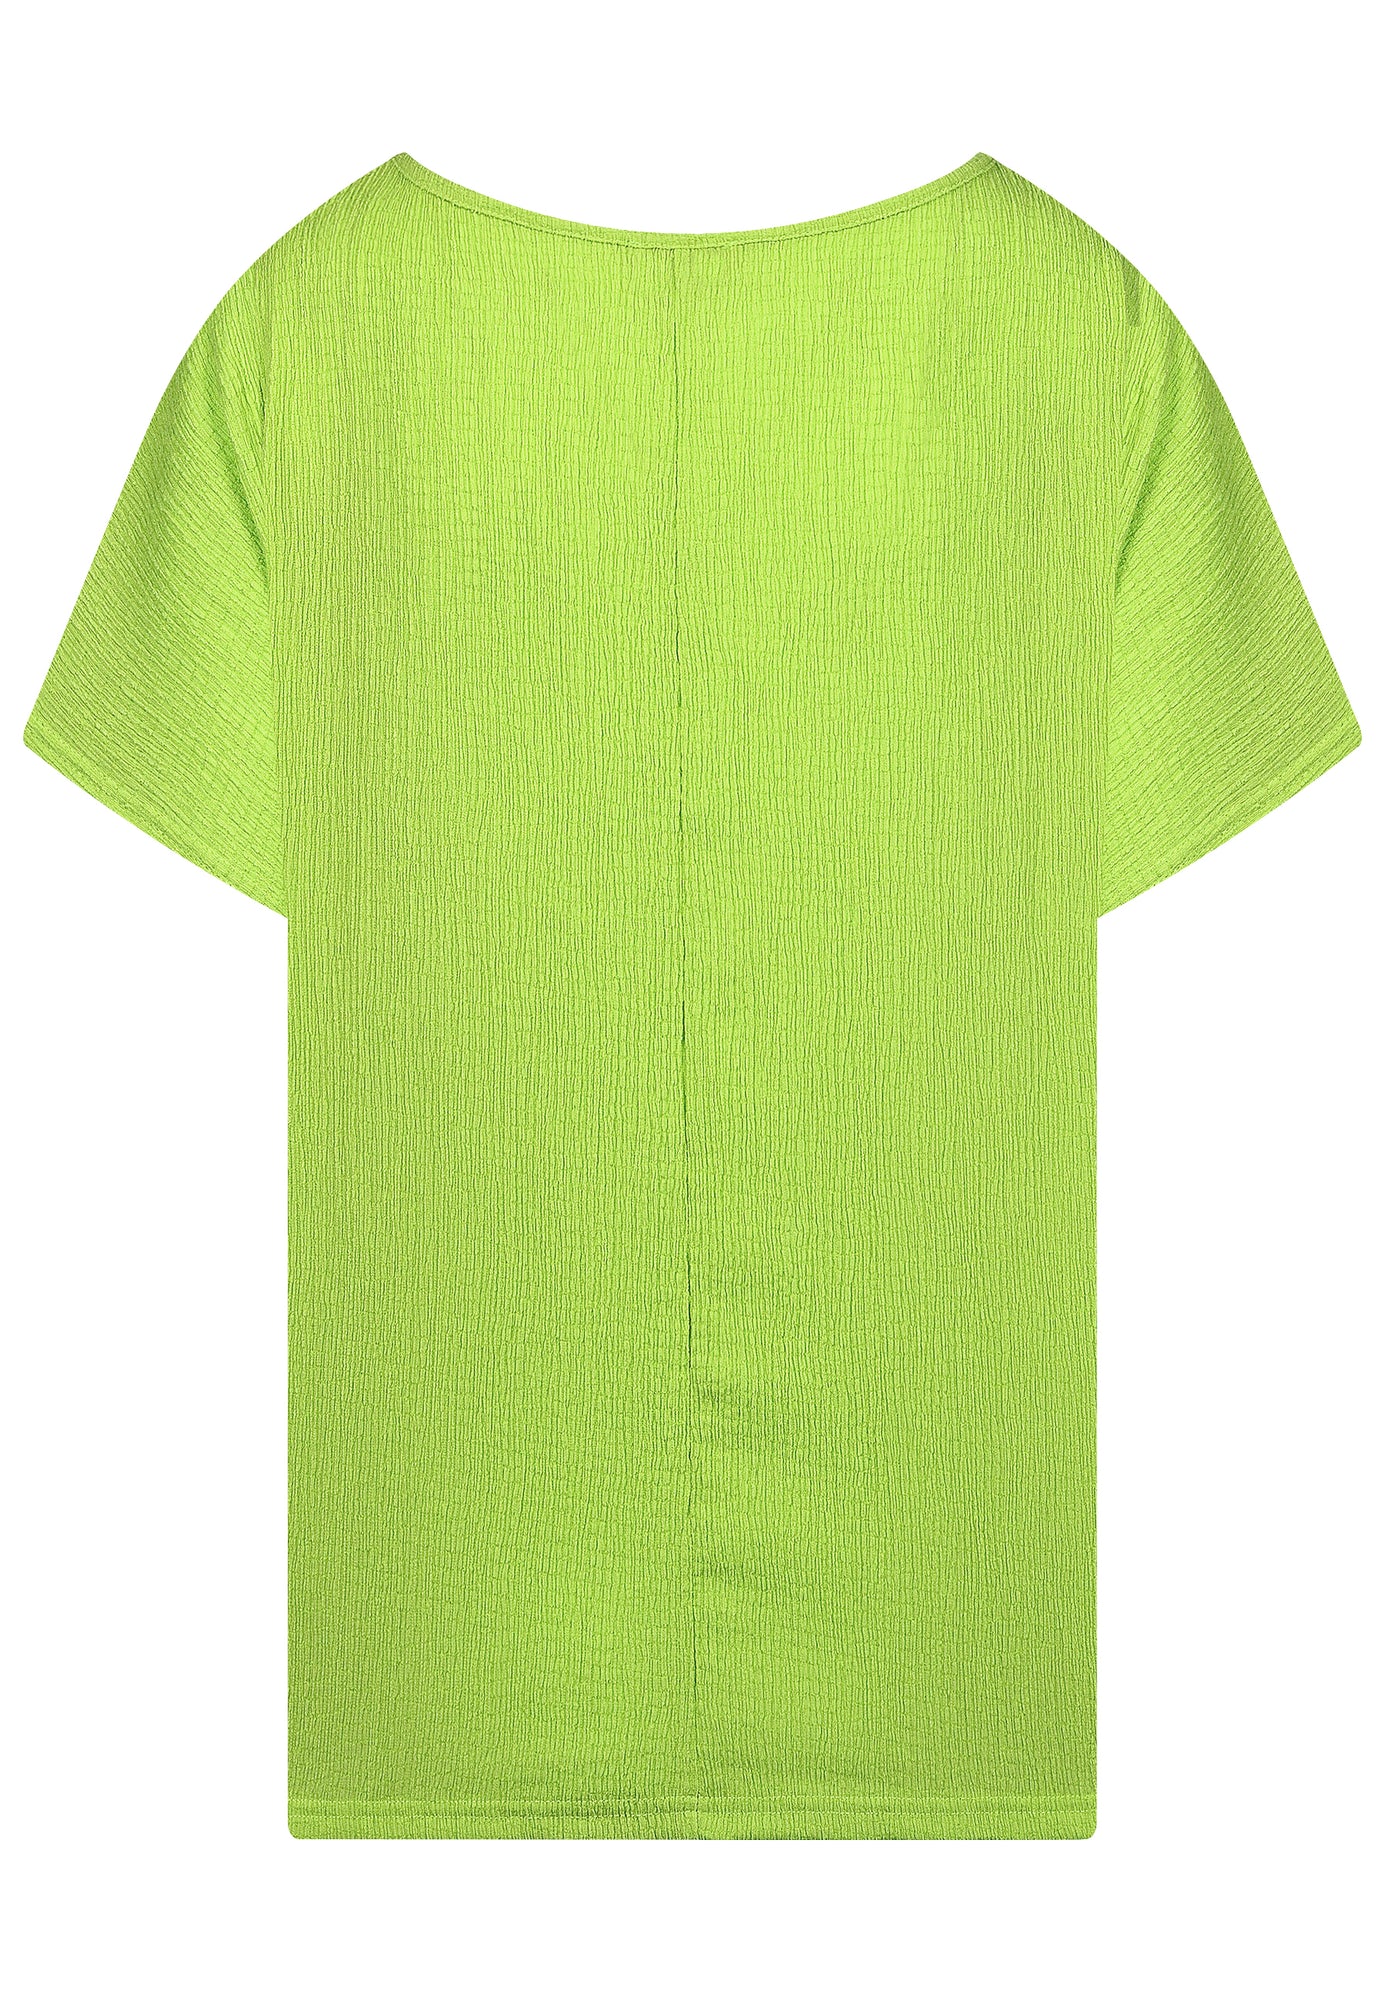 24214 Shirt Crinkle - 05/lime